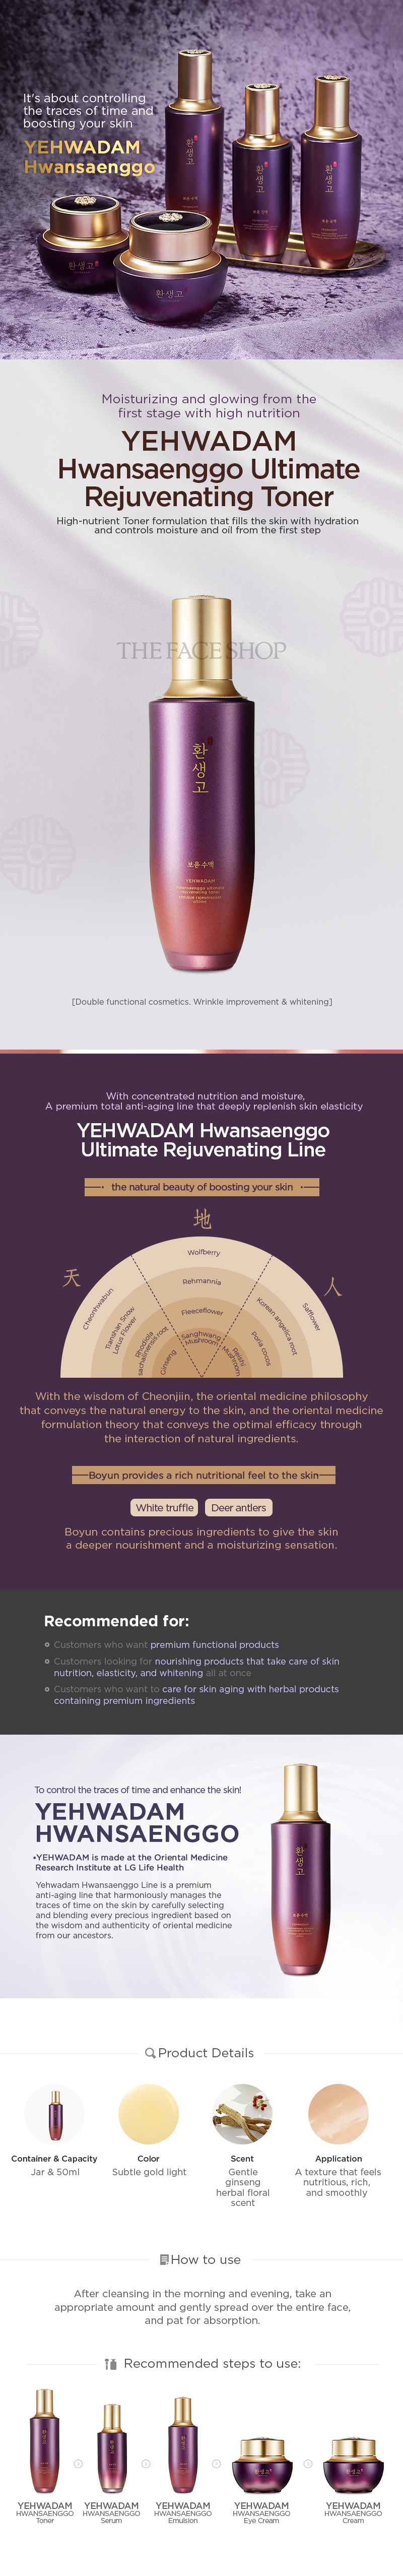 Yehwadam Hwansaenggo Ultimate Rejuvenating Toner